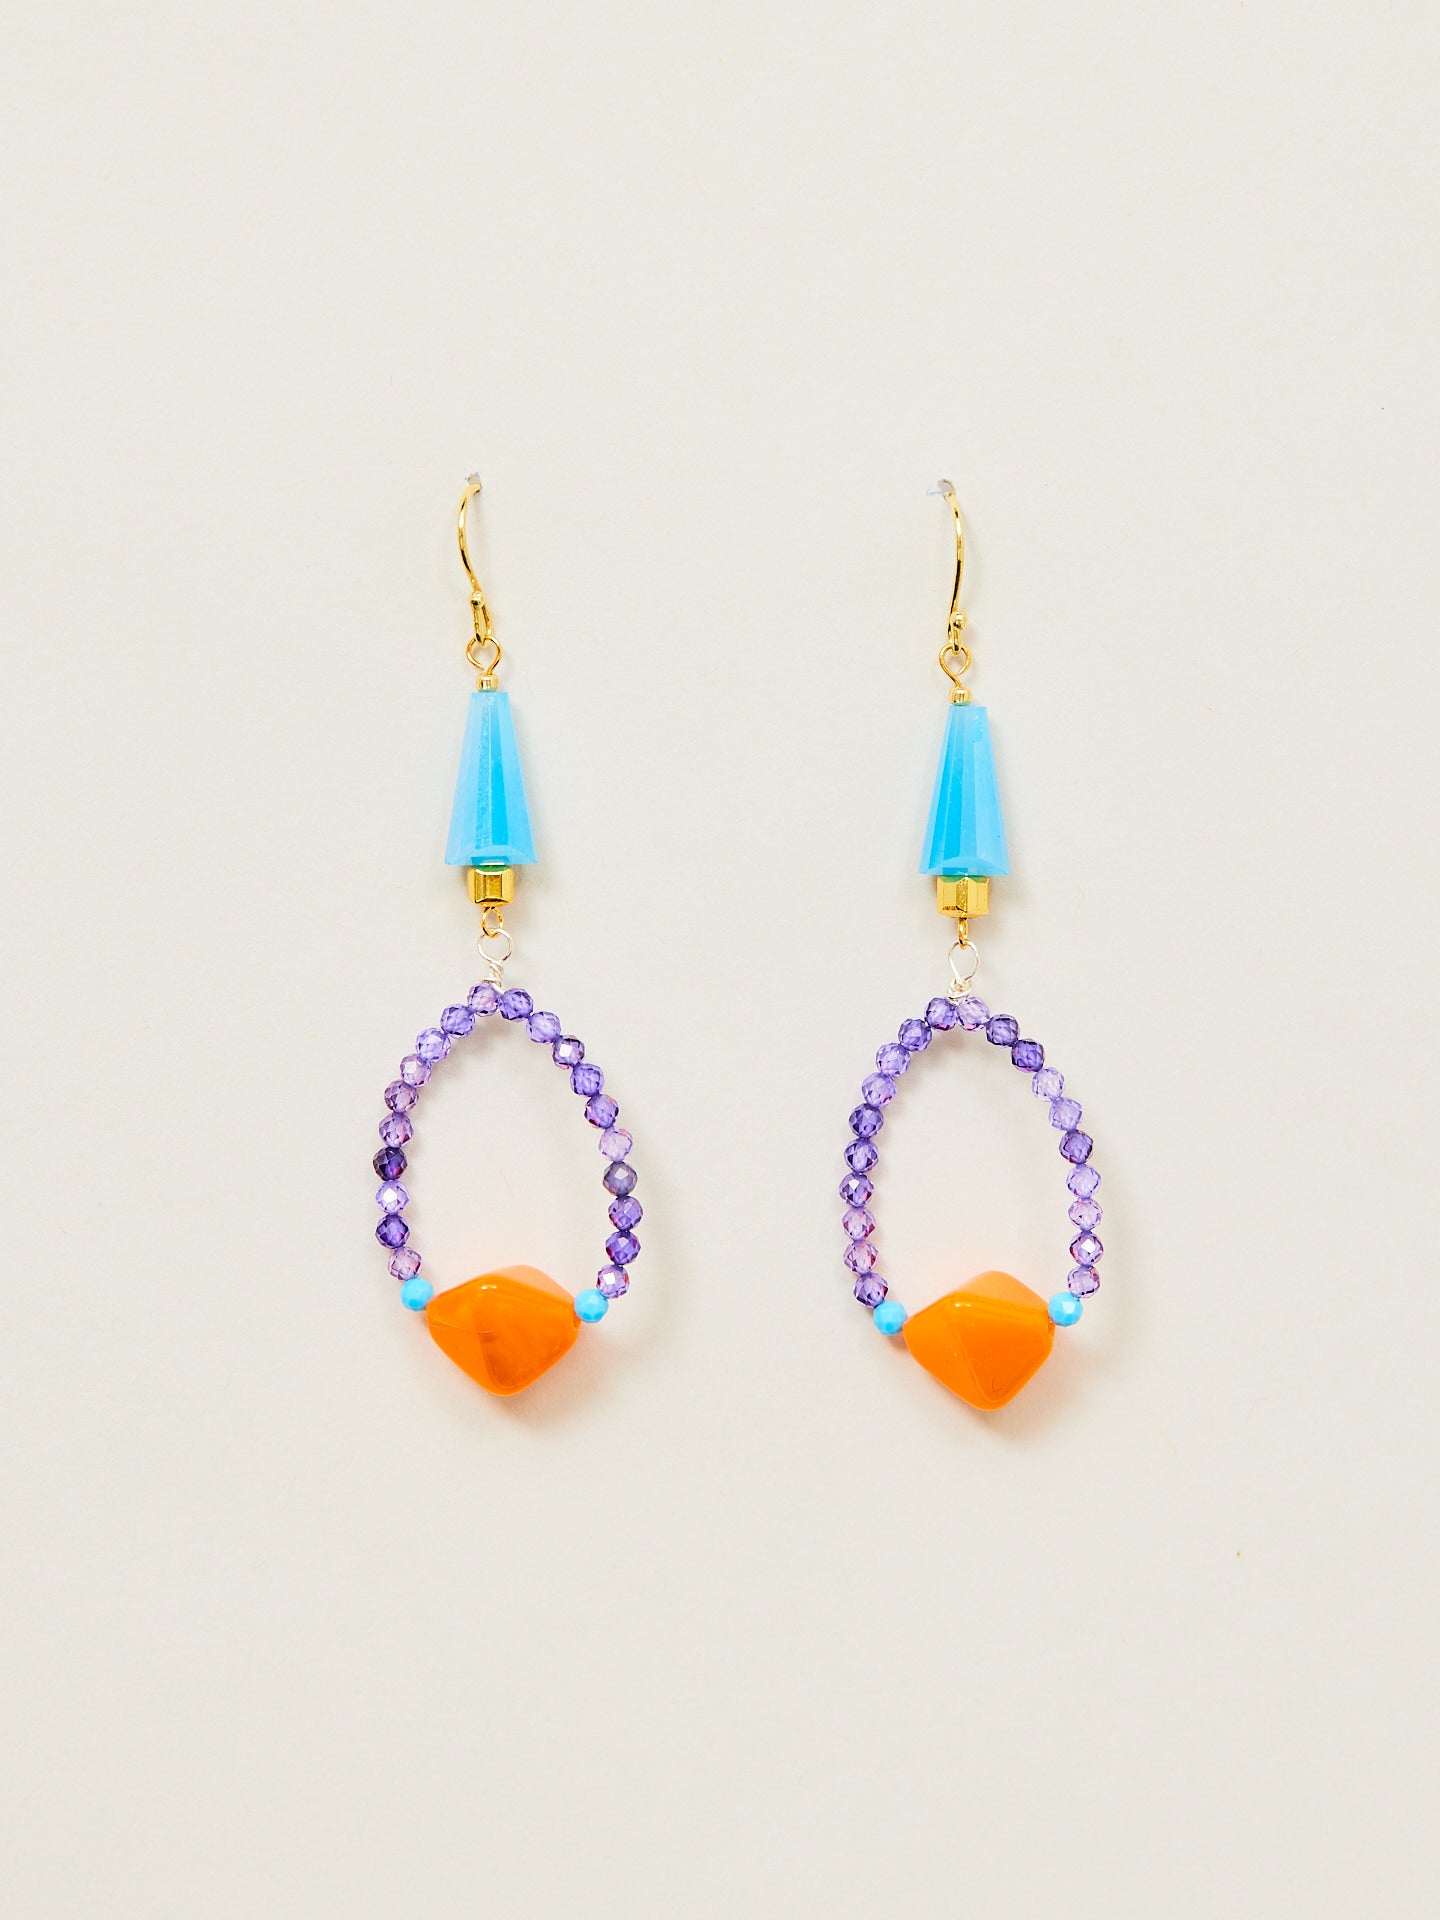 Großaufnahme zwier wunderschöner Ohrringe, bestehnd aus goldenen Ohrhängern, blauen, violetten und orangenen Perlen.